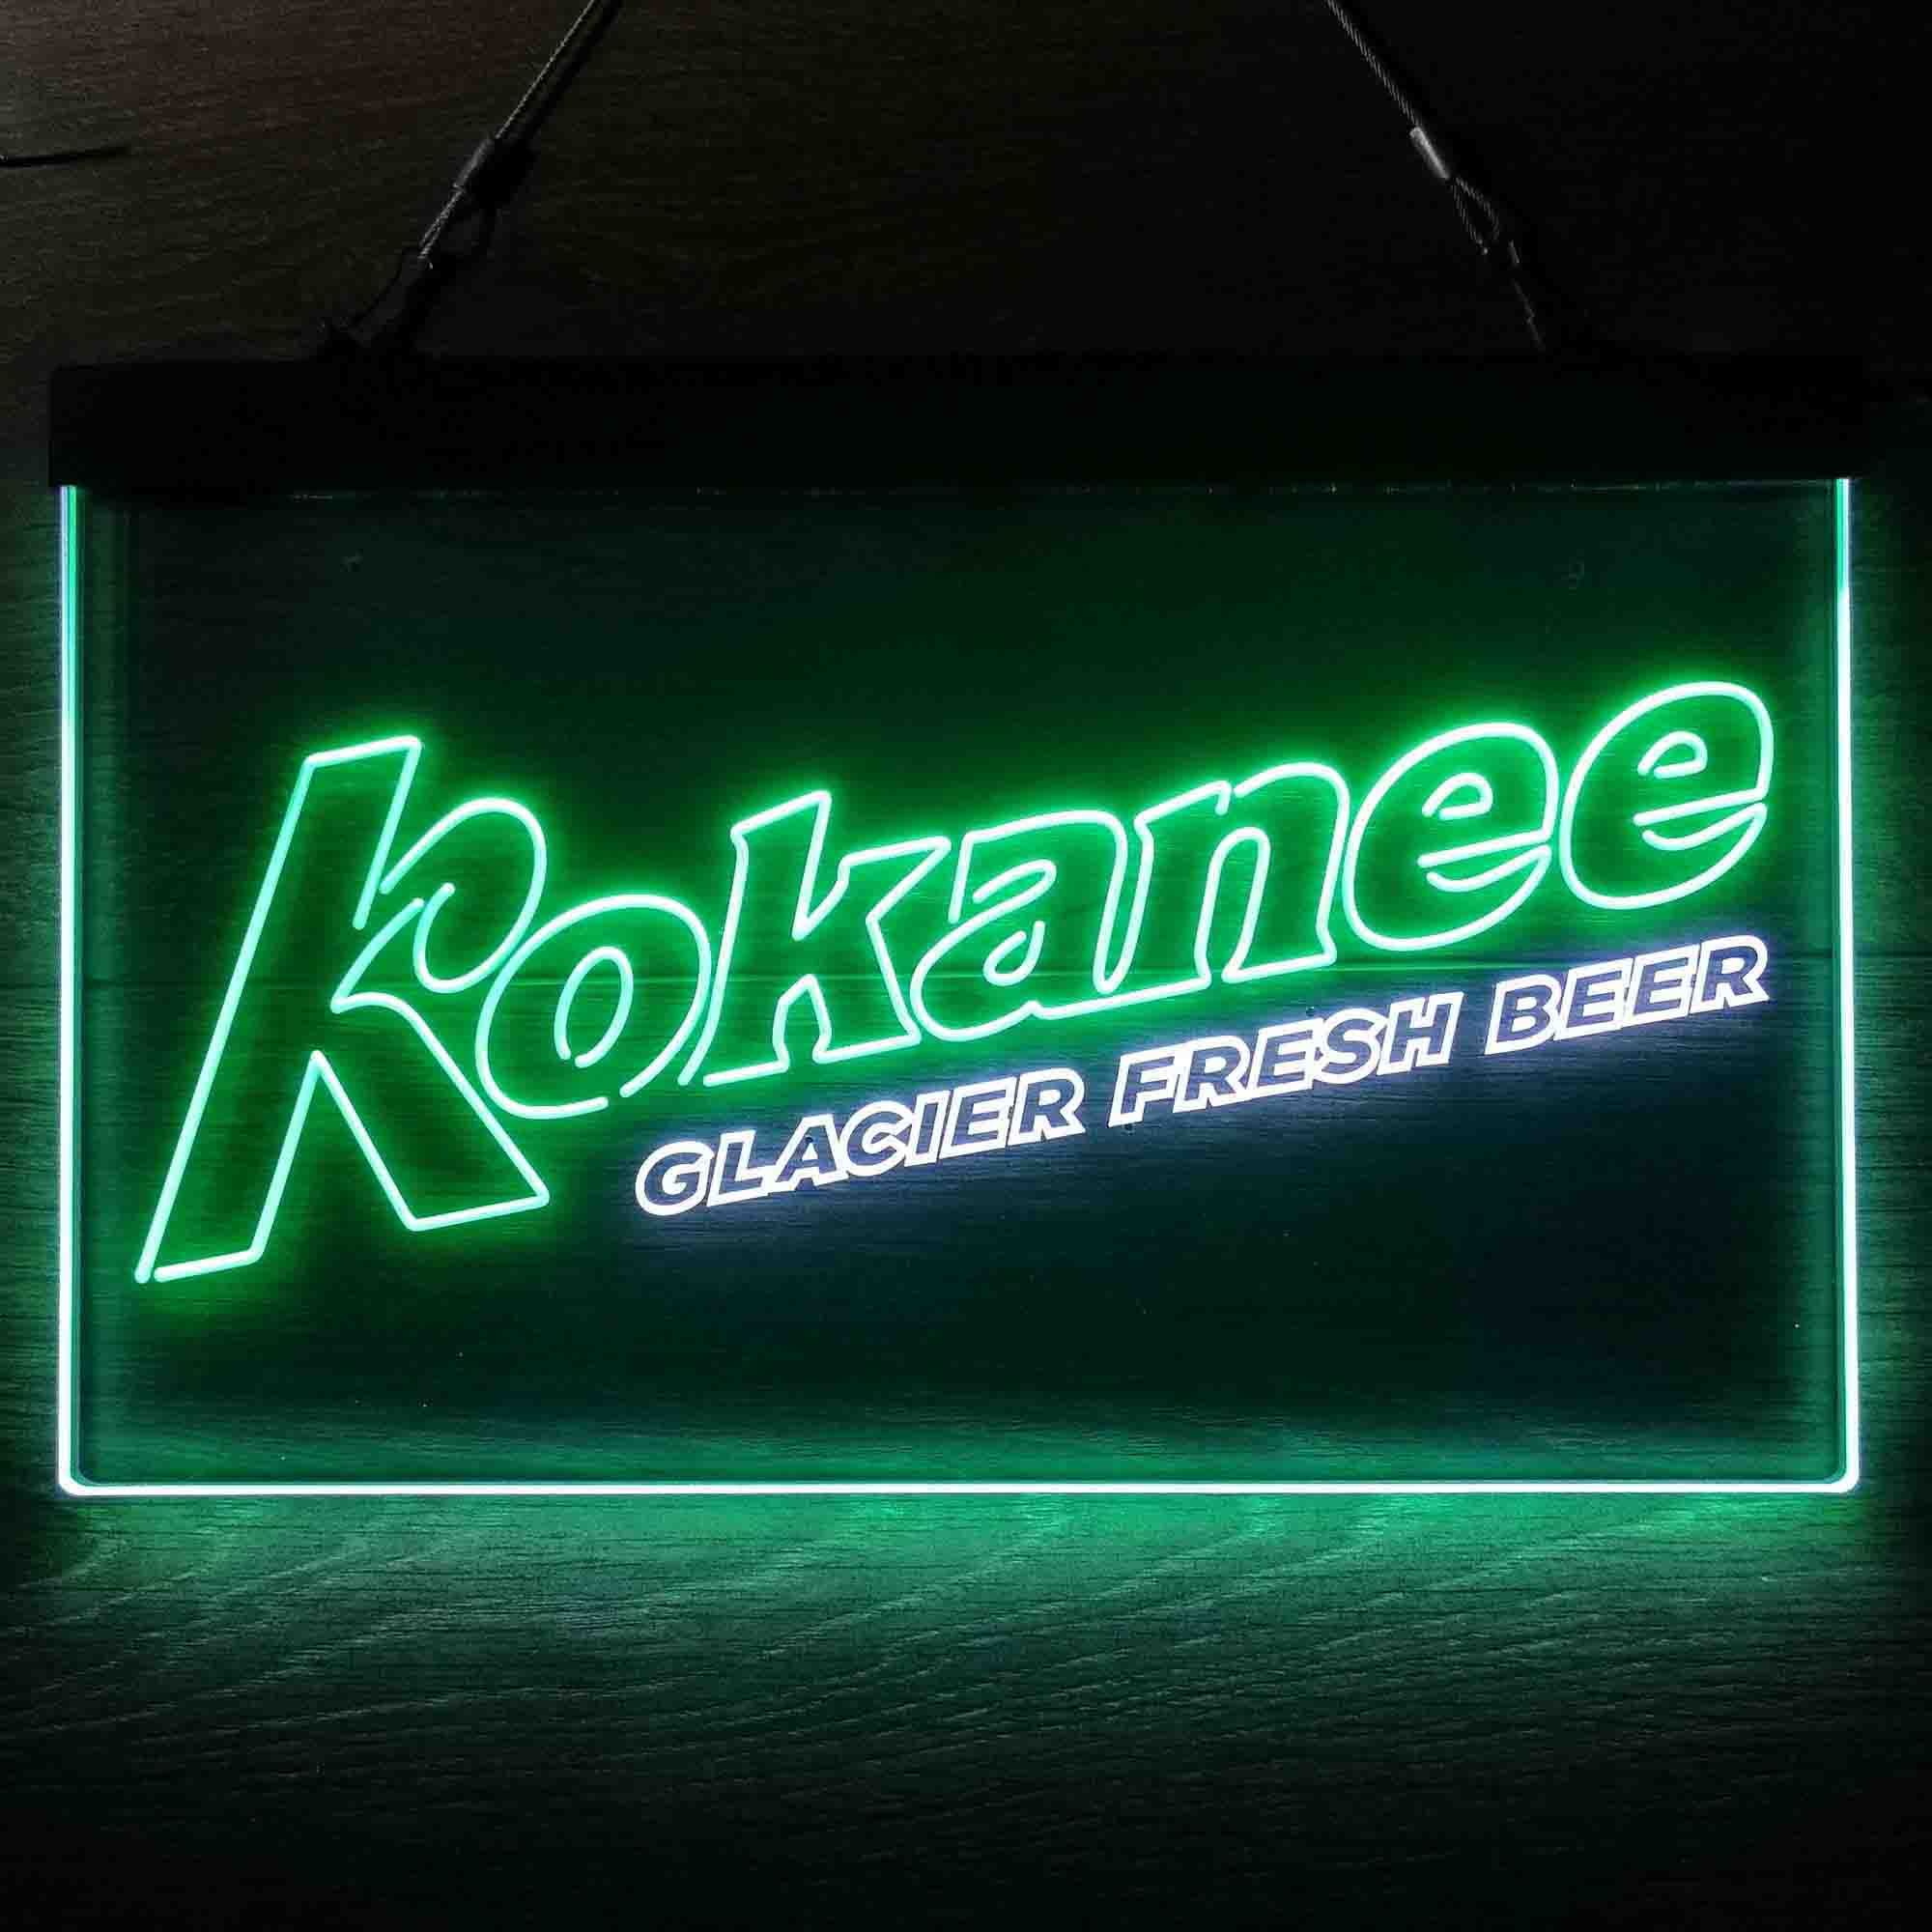 New Kokanee Beer Man Cave Neon Light Sign 20"x16" 